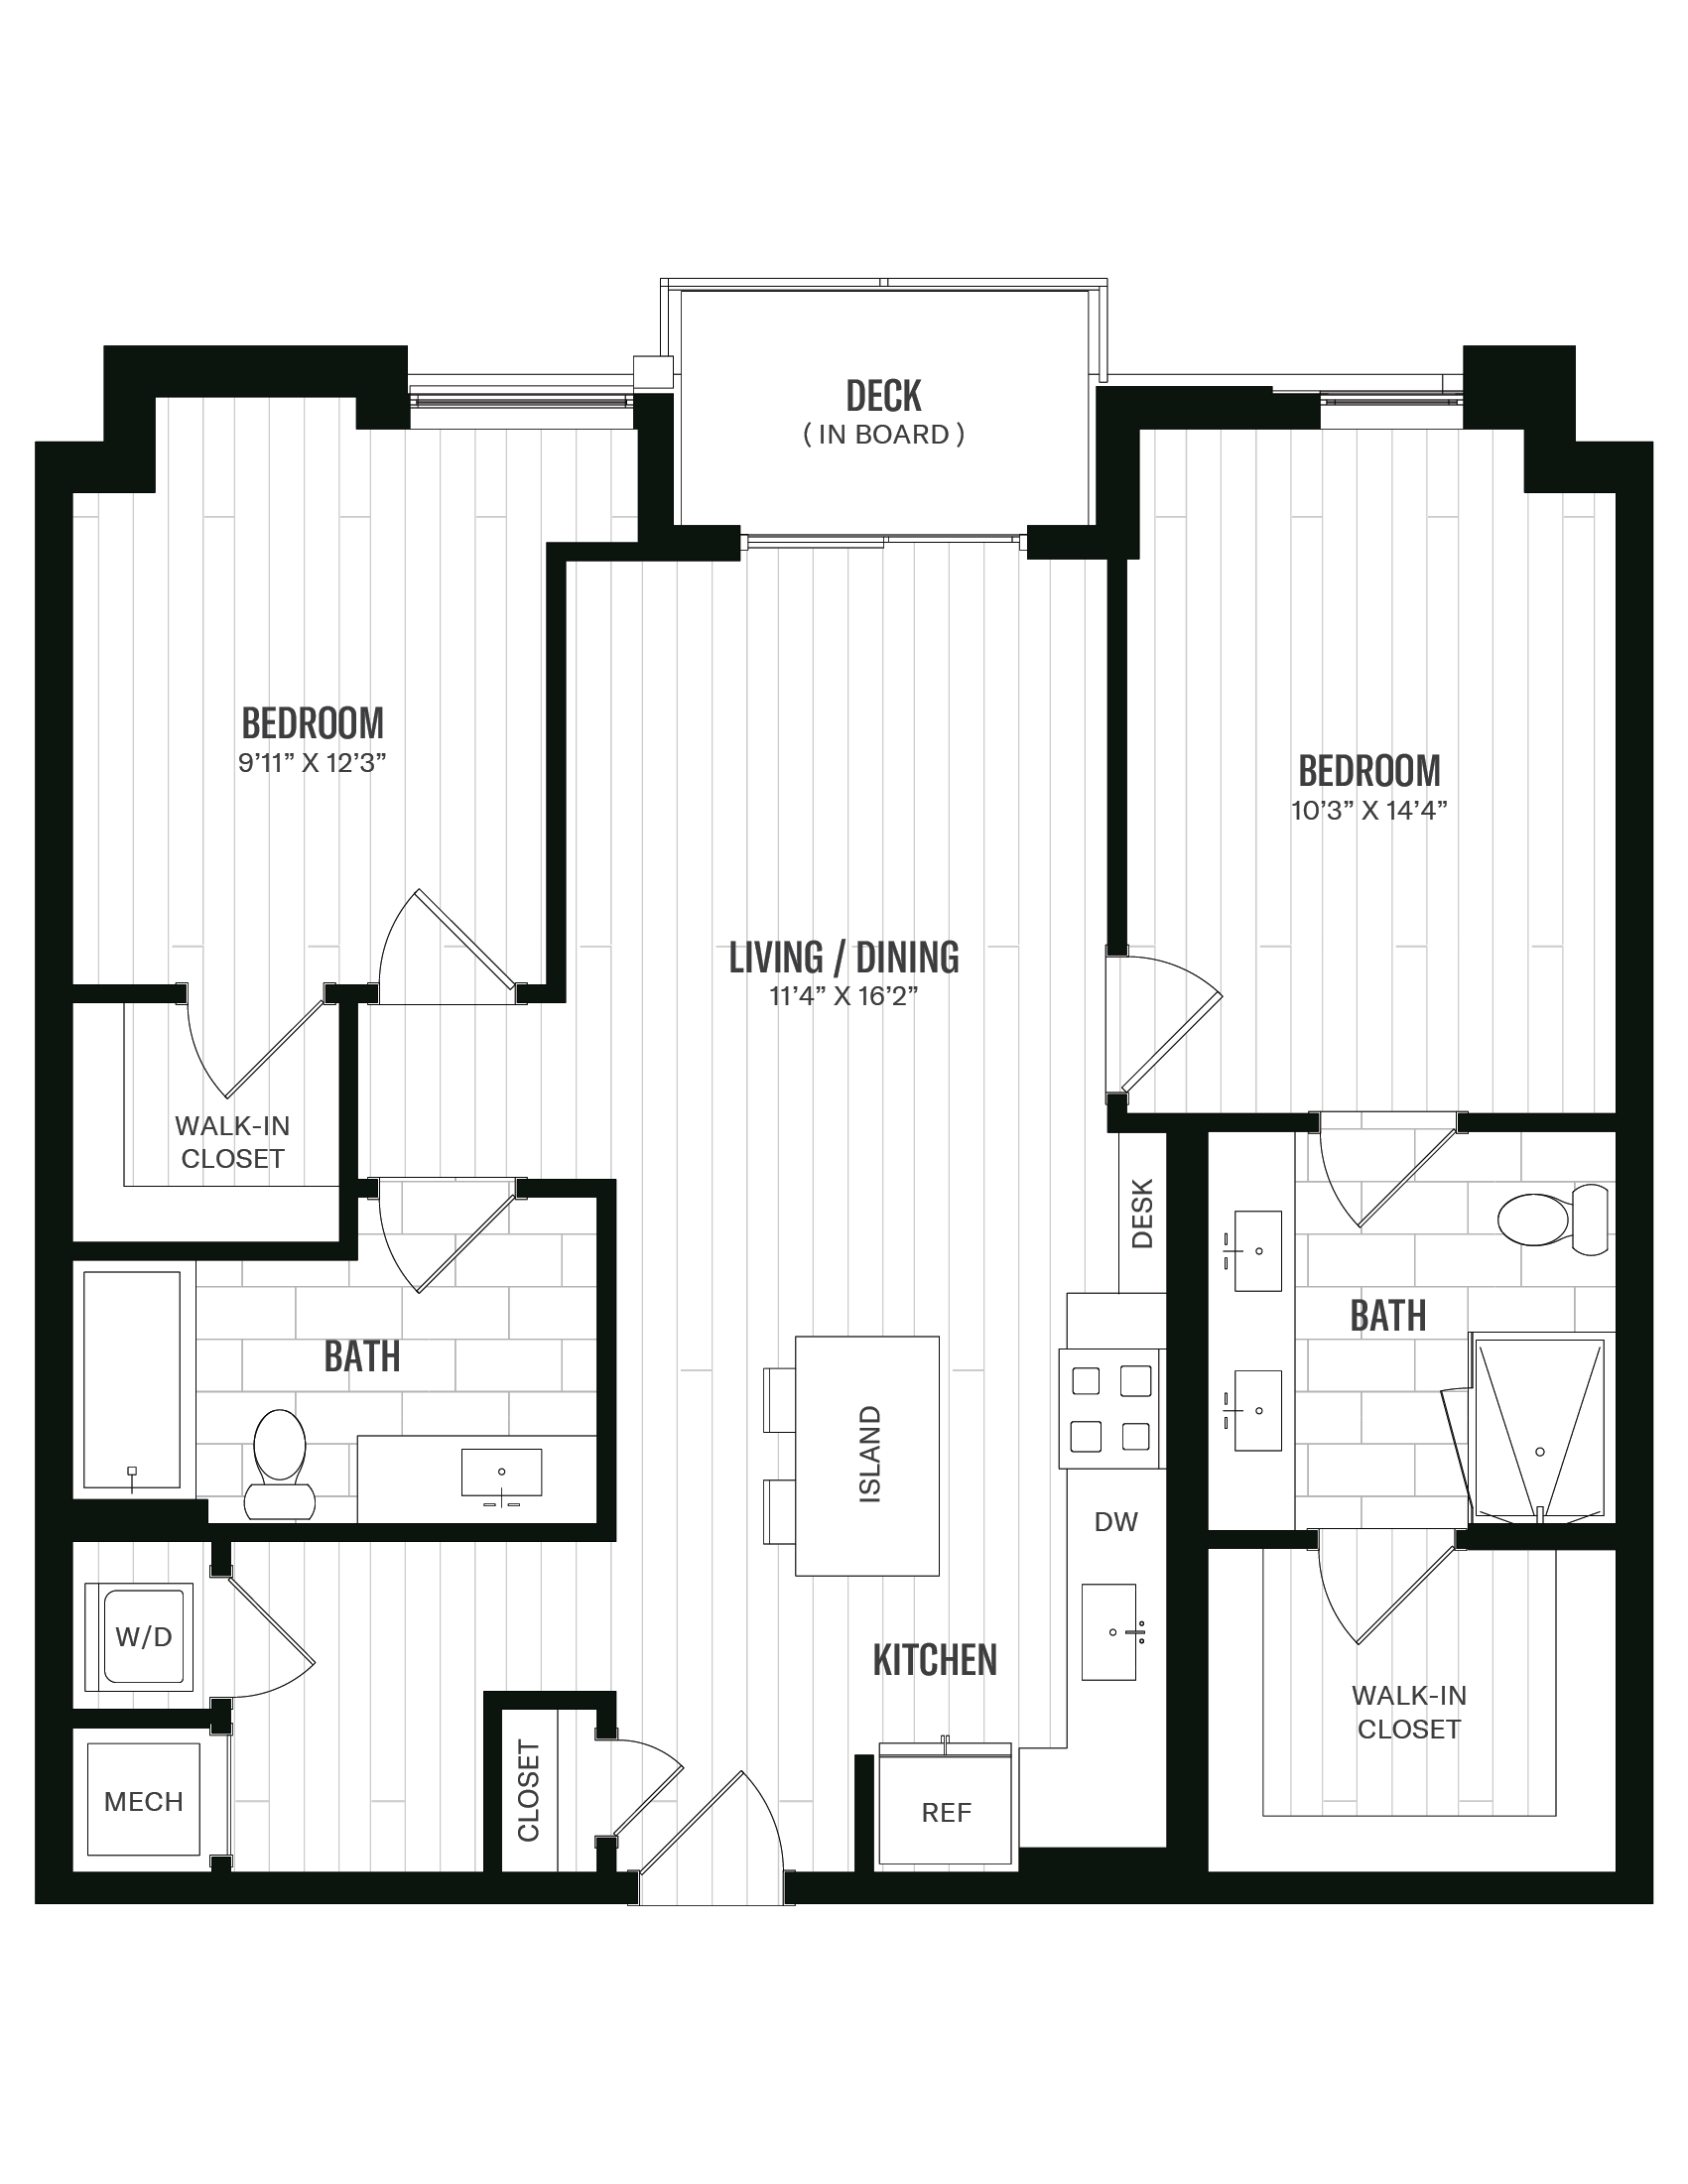 Floorplan image of unit 450